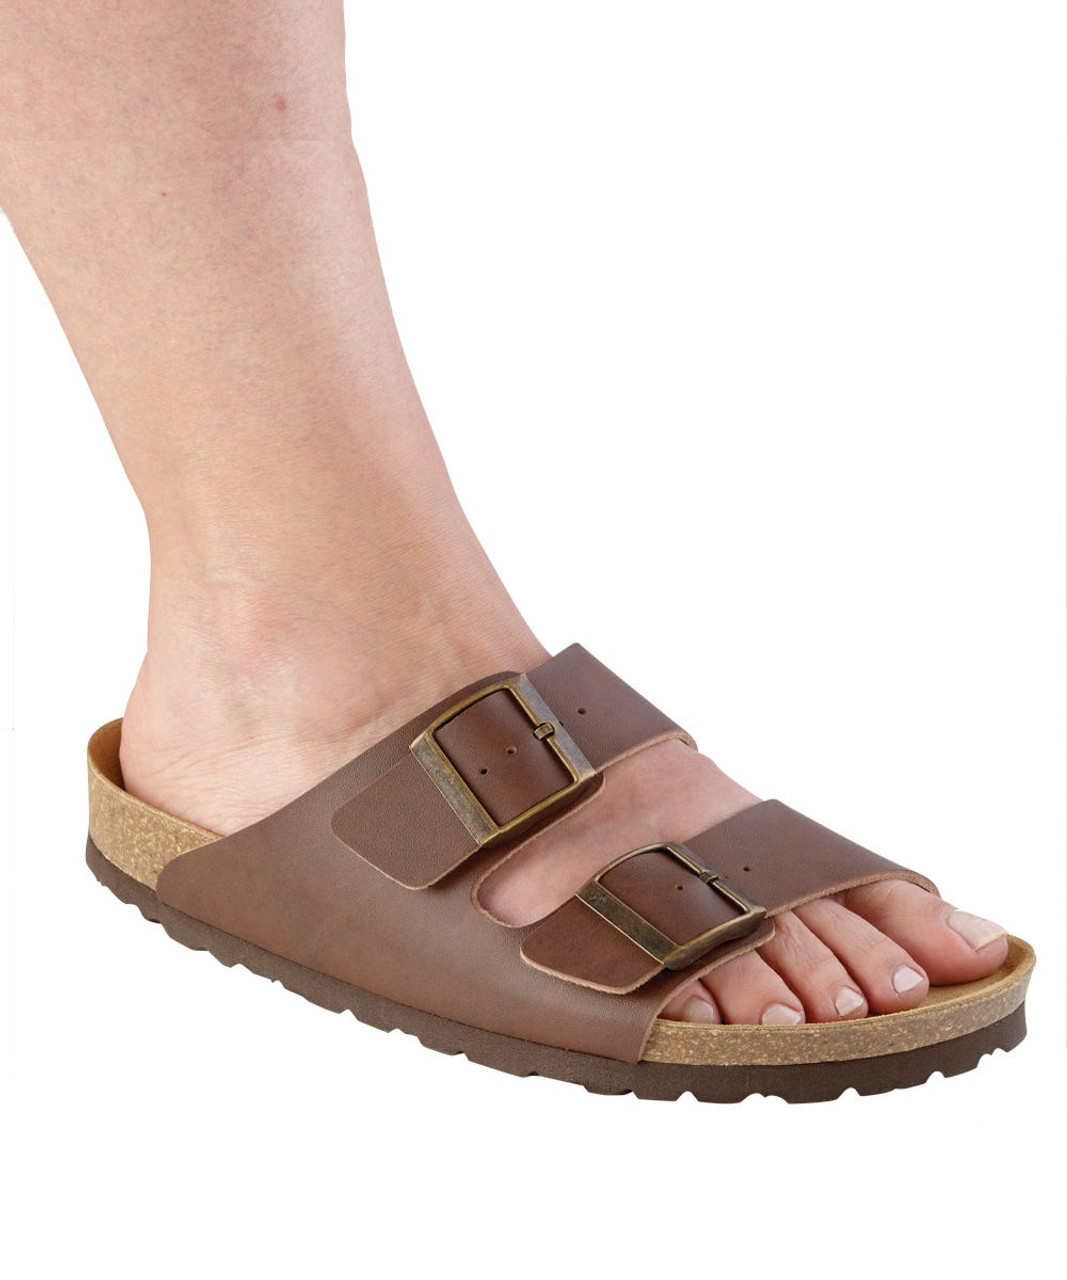 Silverts SV10290 Womens Slip-On Shock-Absorbing Adjustable Sandal Shoes Brown, Size=6, SV10290-SV57-6